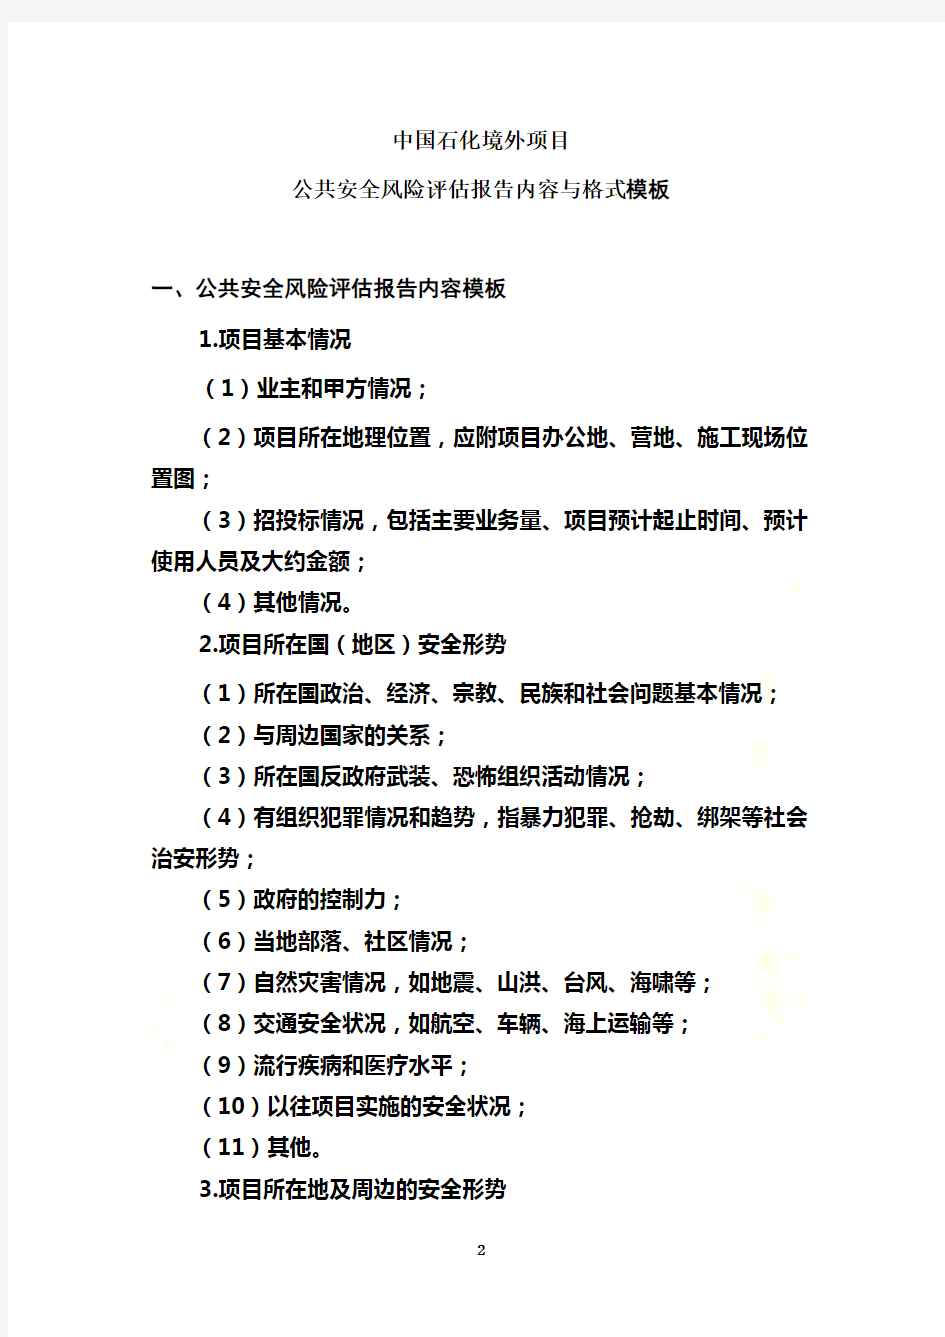 中国石化境外项目公共安全风险评估报告内容与格式(2010[1].1.6)